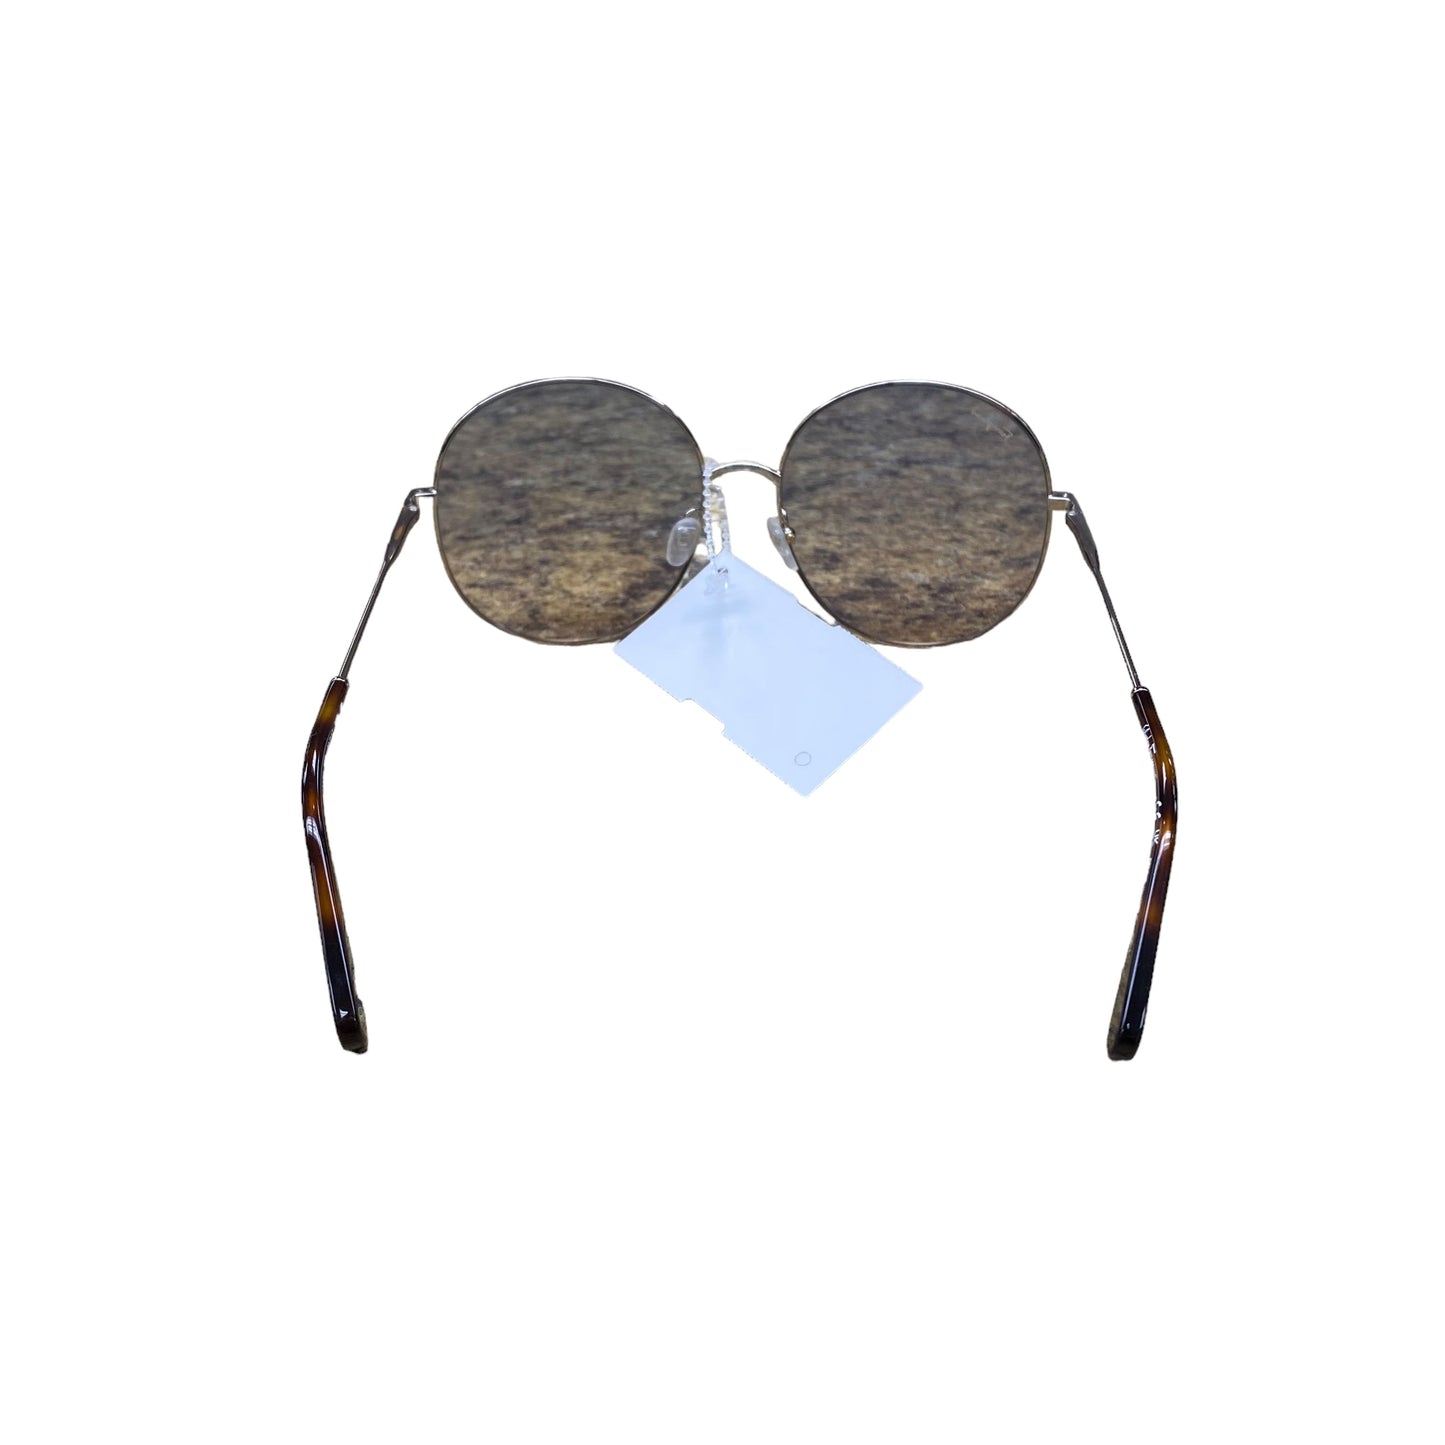 Sunglasses Luxury Designer Ferragamo